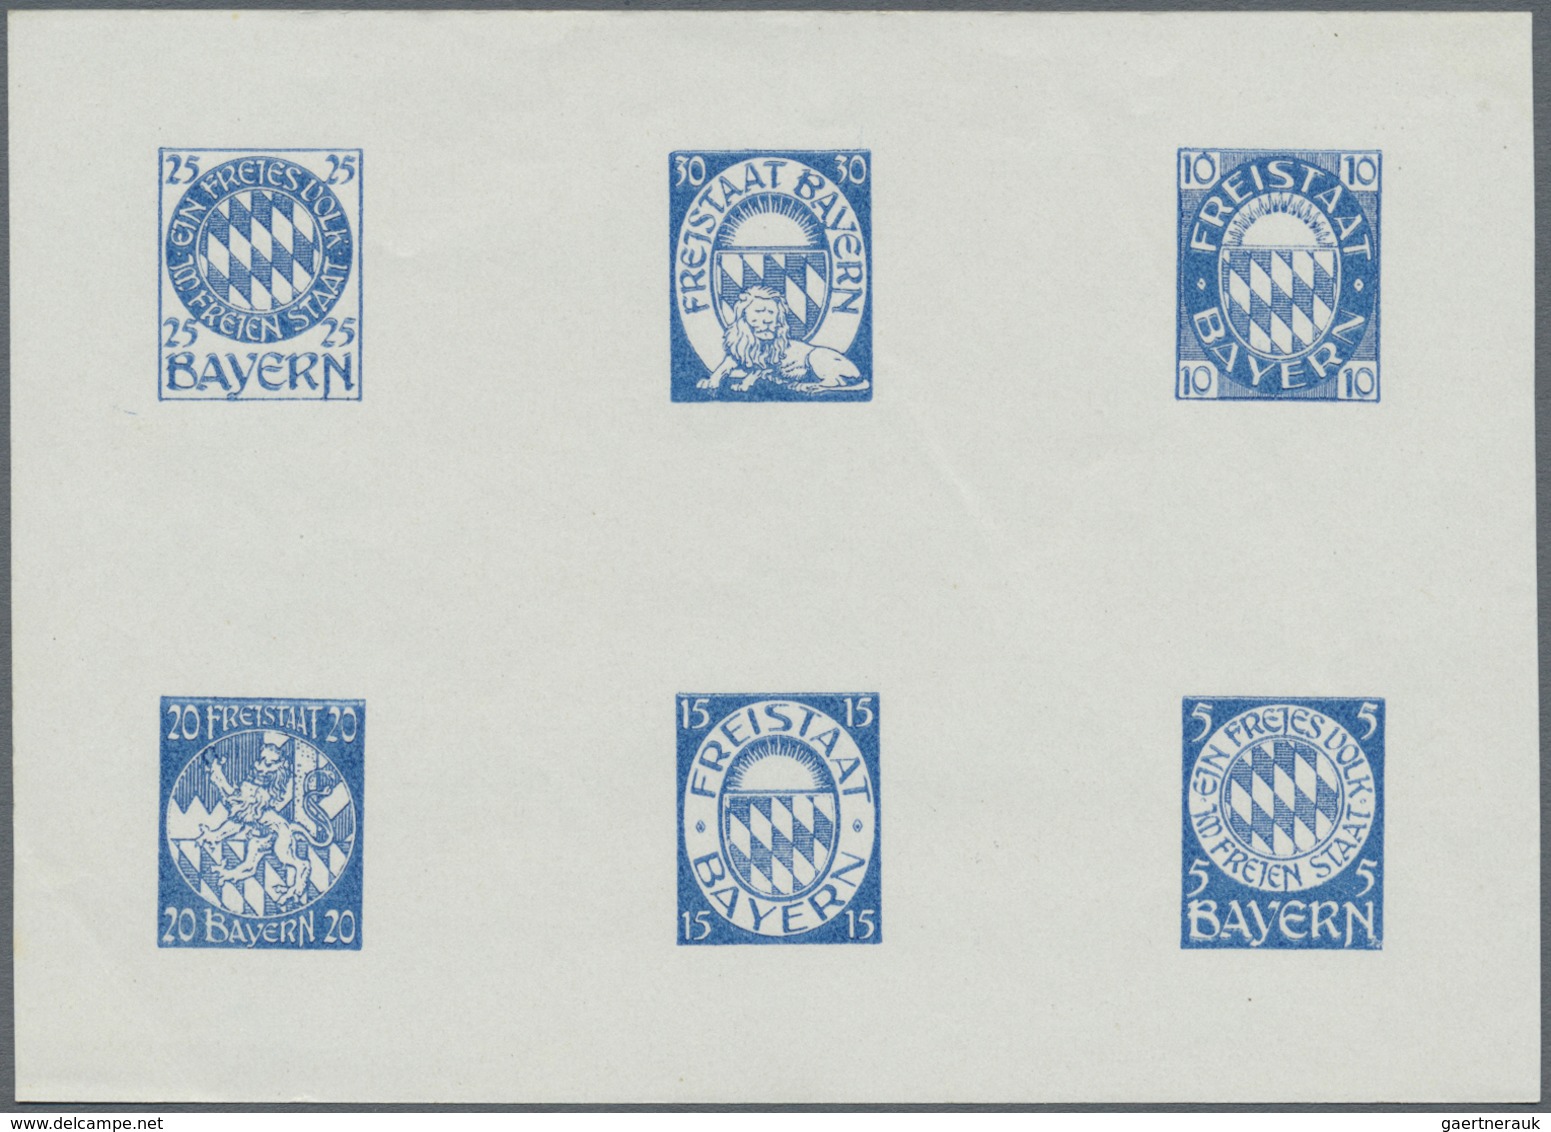 (*) Bayern - Besonderheiten: 1910/1920, 6 Essay-Blöcke mit je 6 Marken in verschiedenen Farben, 1 Block